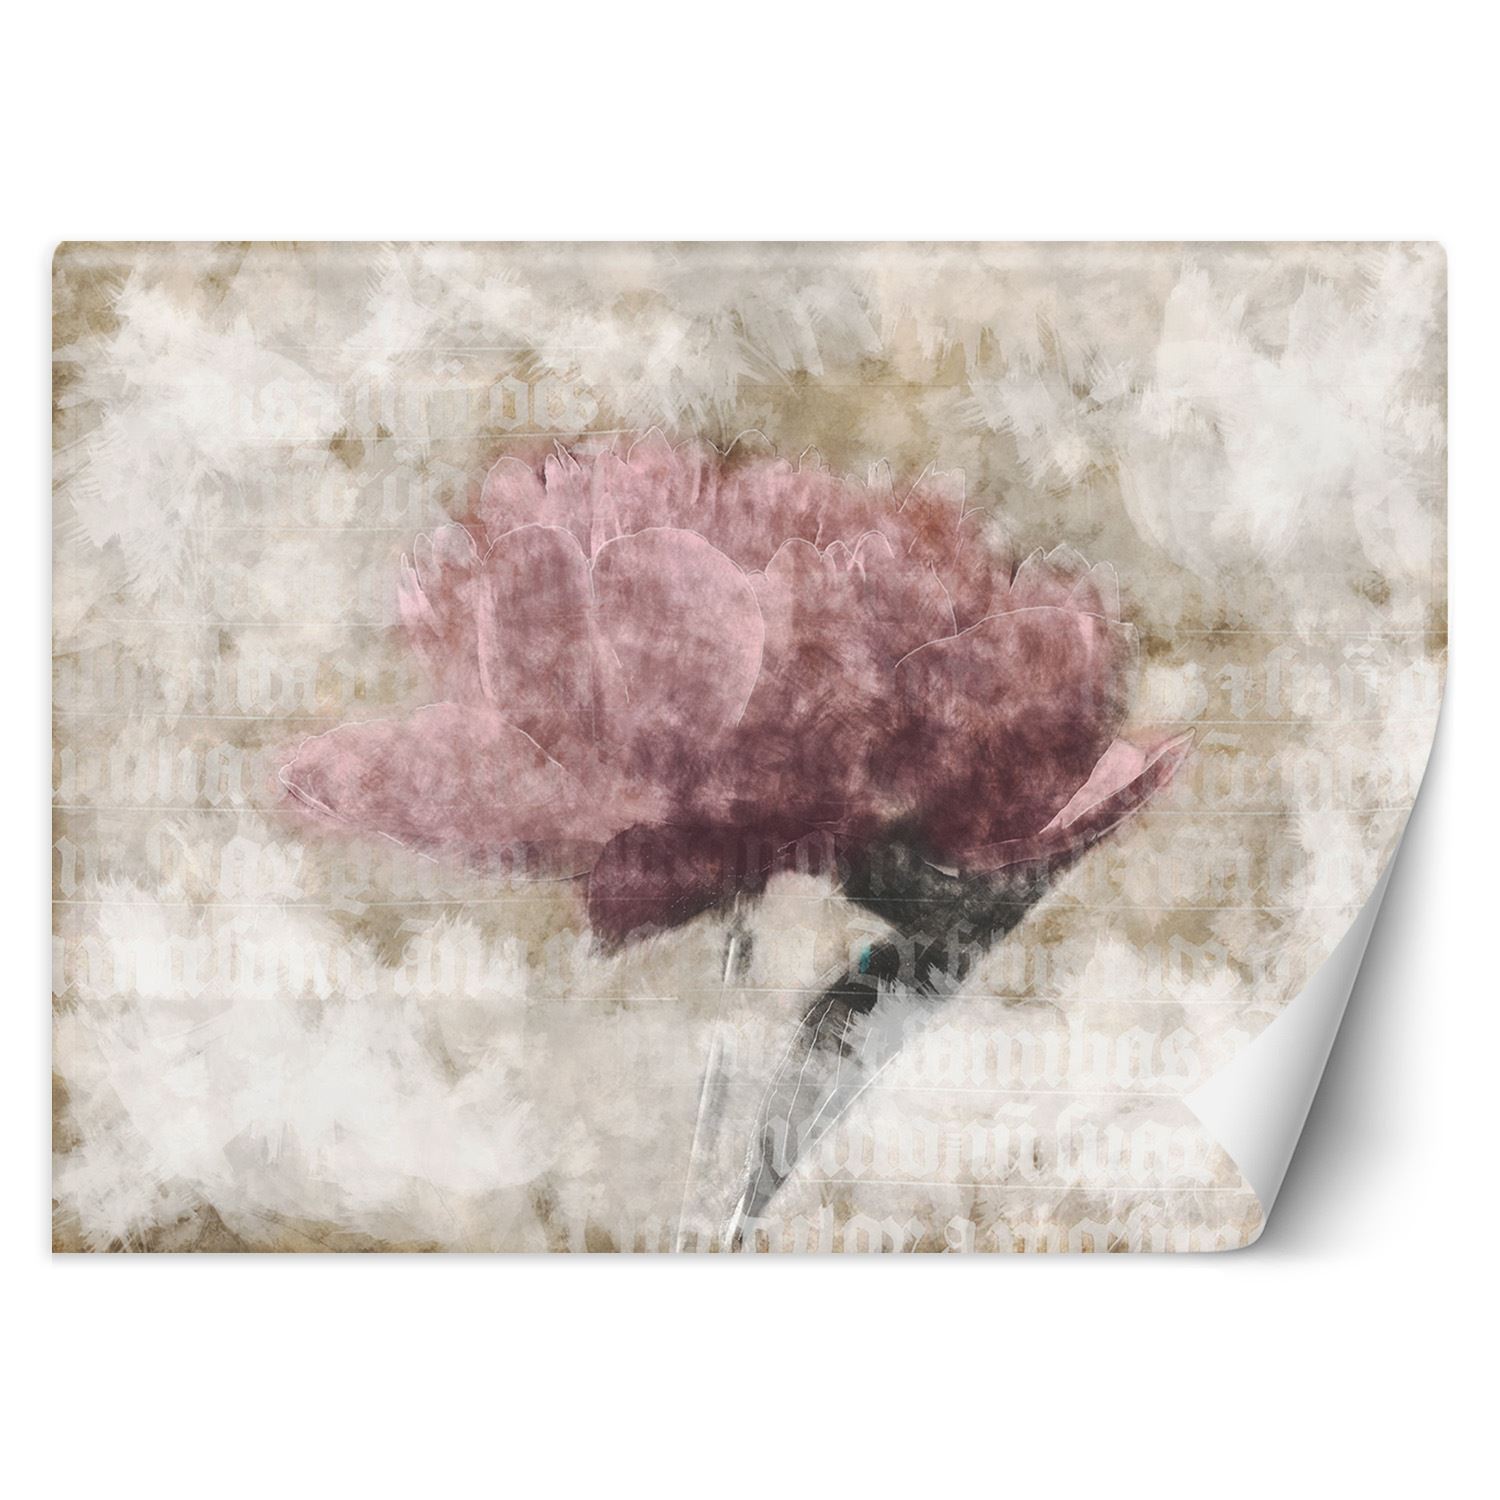 Trend24 – Behang – Abstracte Bloemen In Pastelkleuren – Vliesbehang – Fotobehang 3D – Behang Woonkamer – 450x315x2 cm – Incl. behanglijm